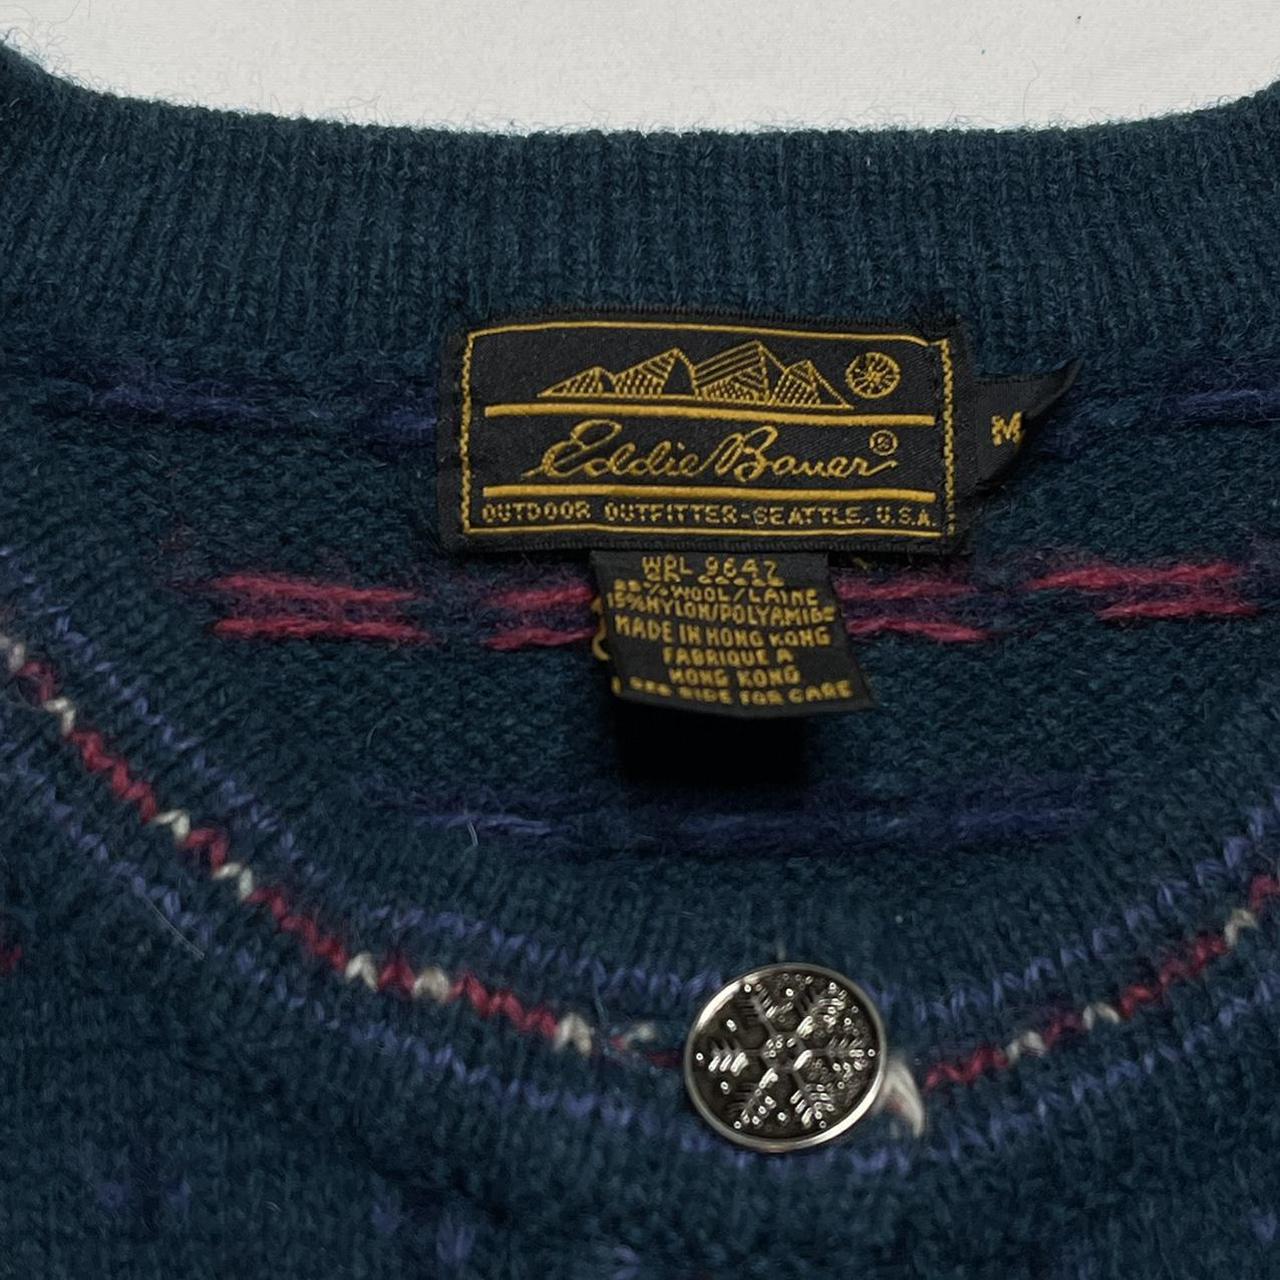 Vintage Cardigan Sweater Vintage Eddie Bauer... - Depop